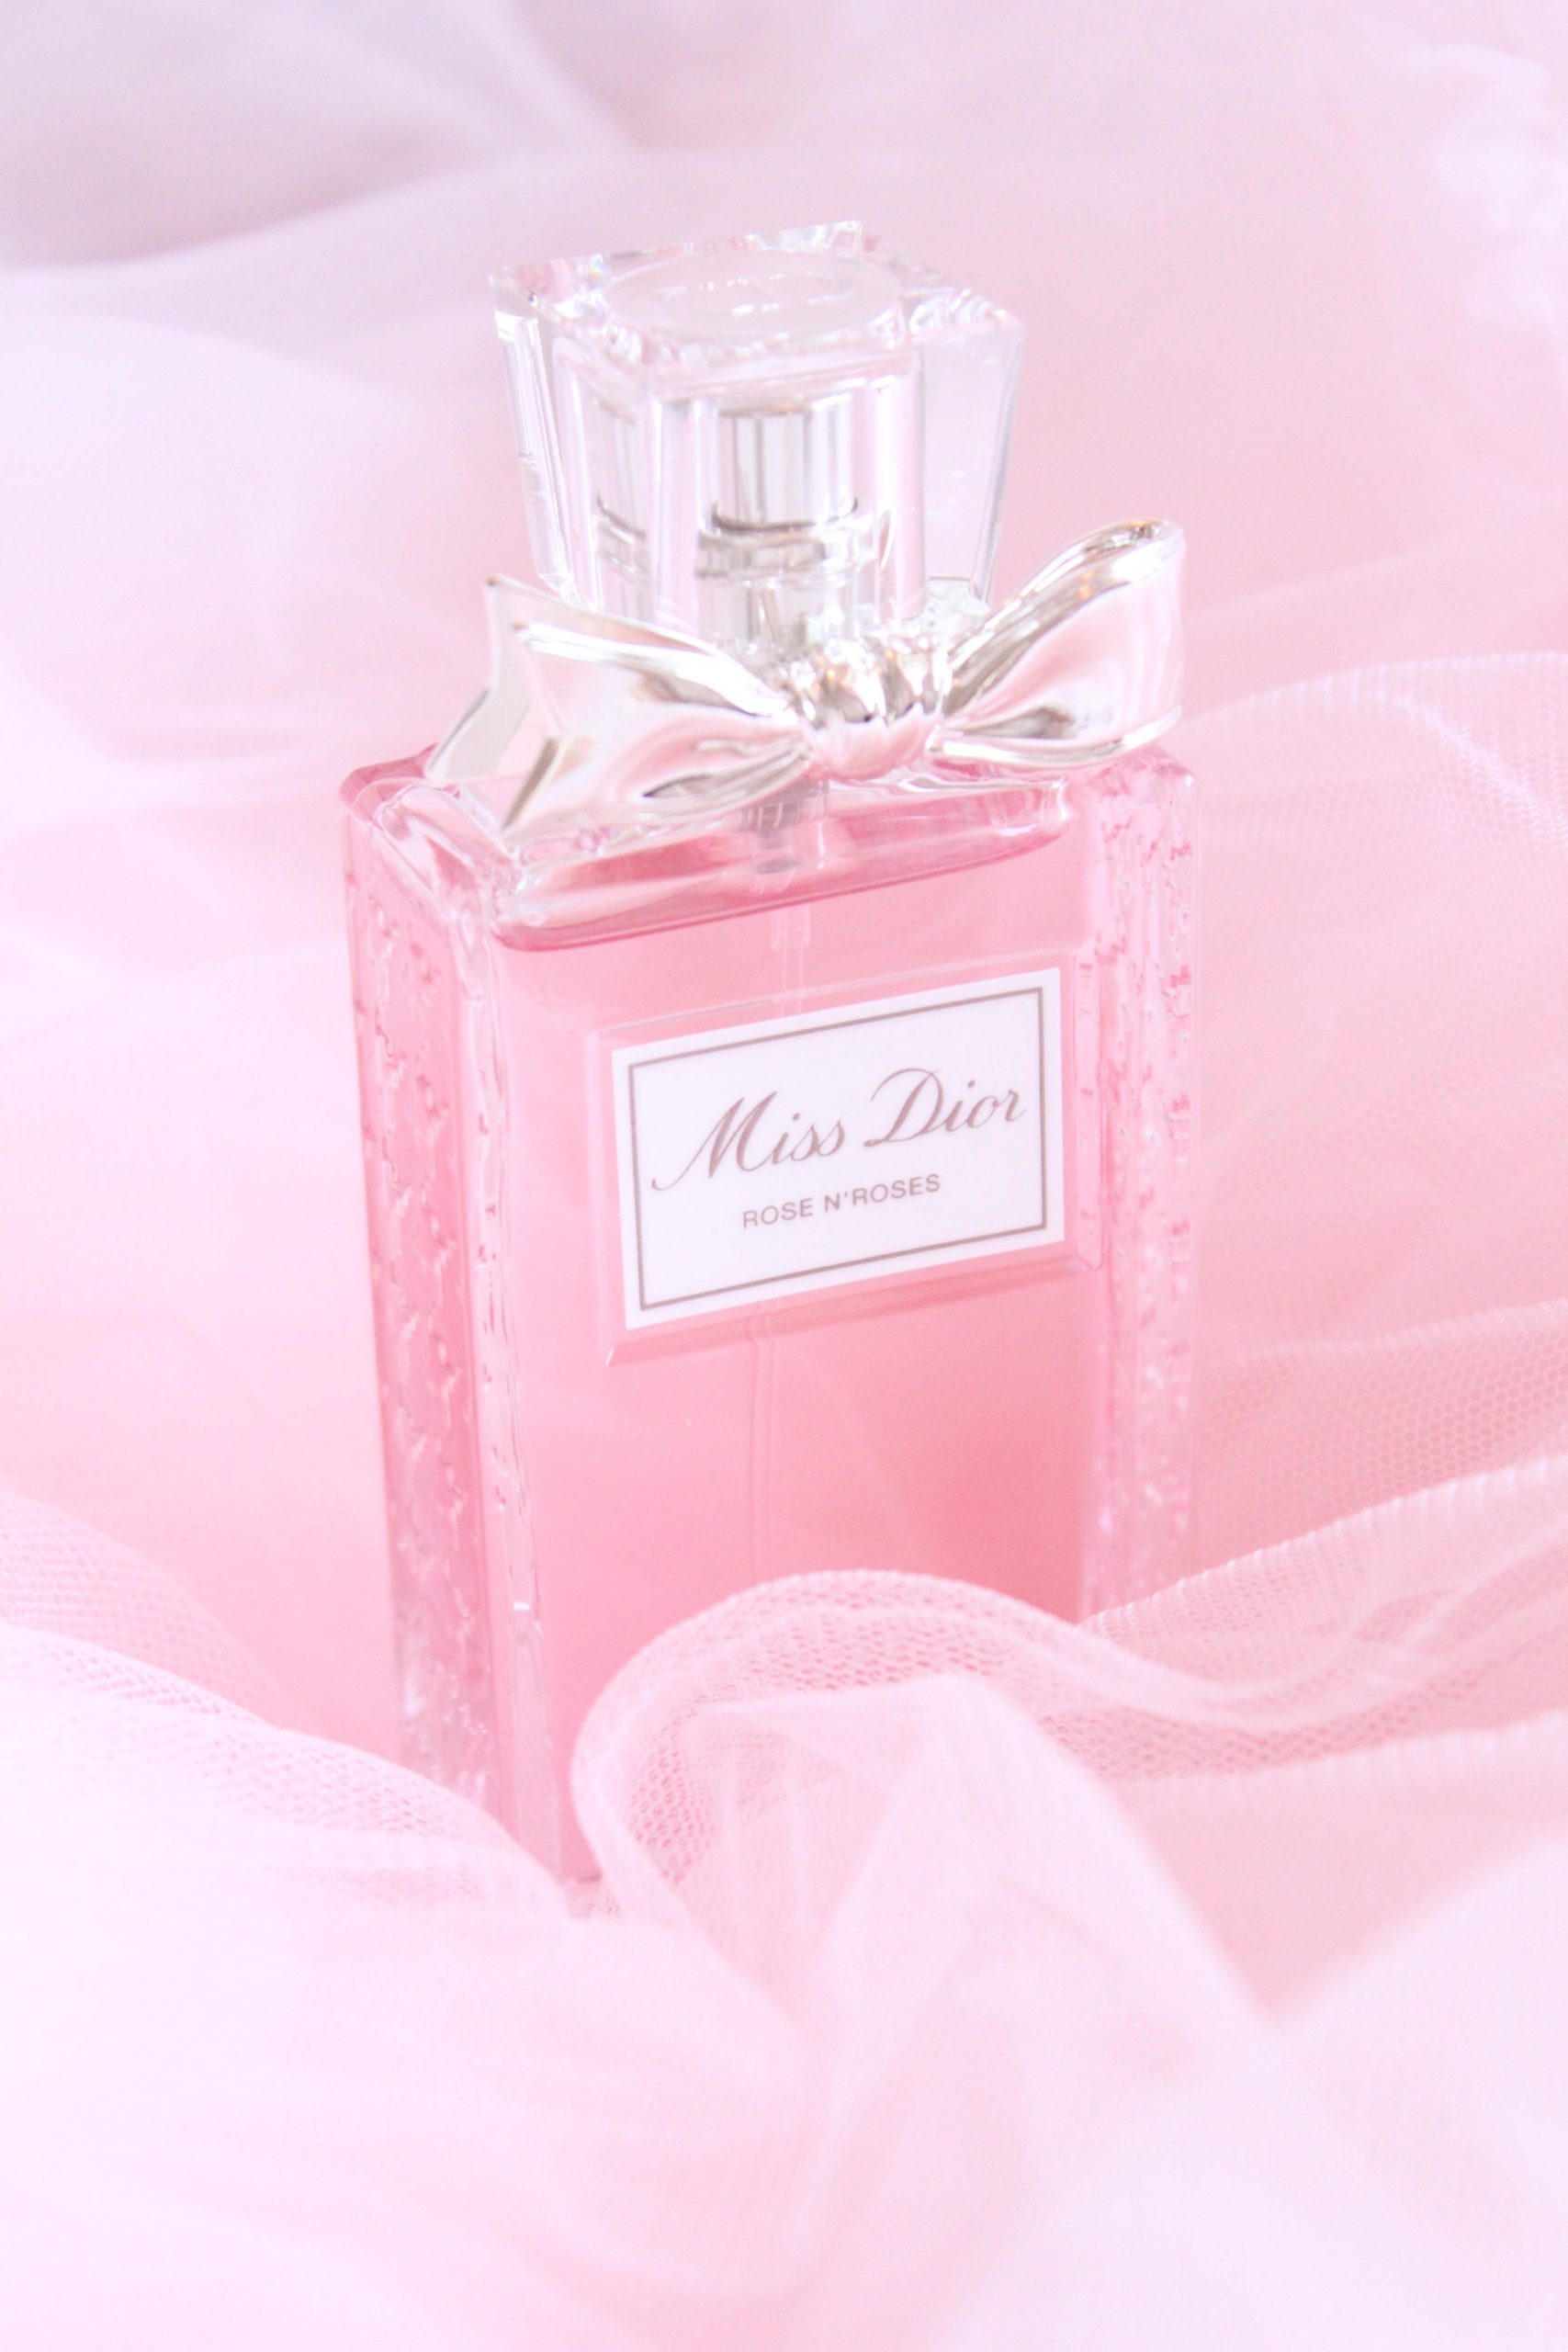 Мисс диор розовые. Мисс диор духи розовые. Dior Miss Dior Rose n Rose. Духи Мисс диор женские розовые. Диор Пинк духи.